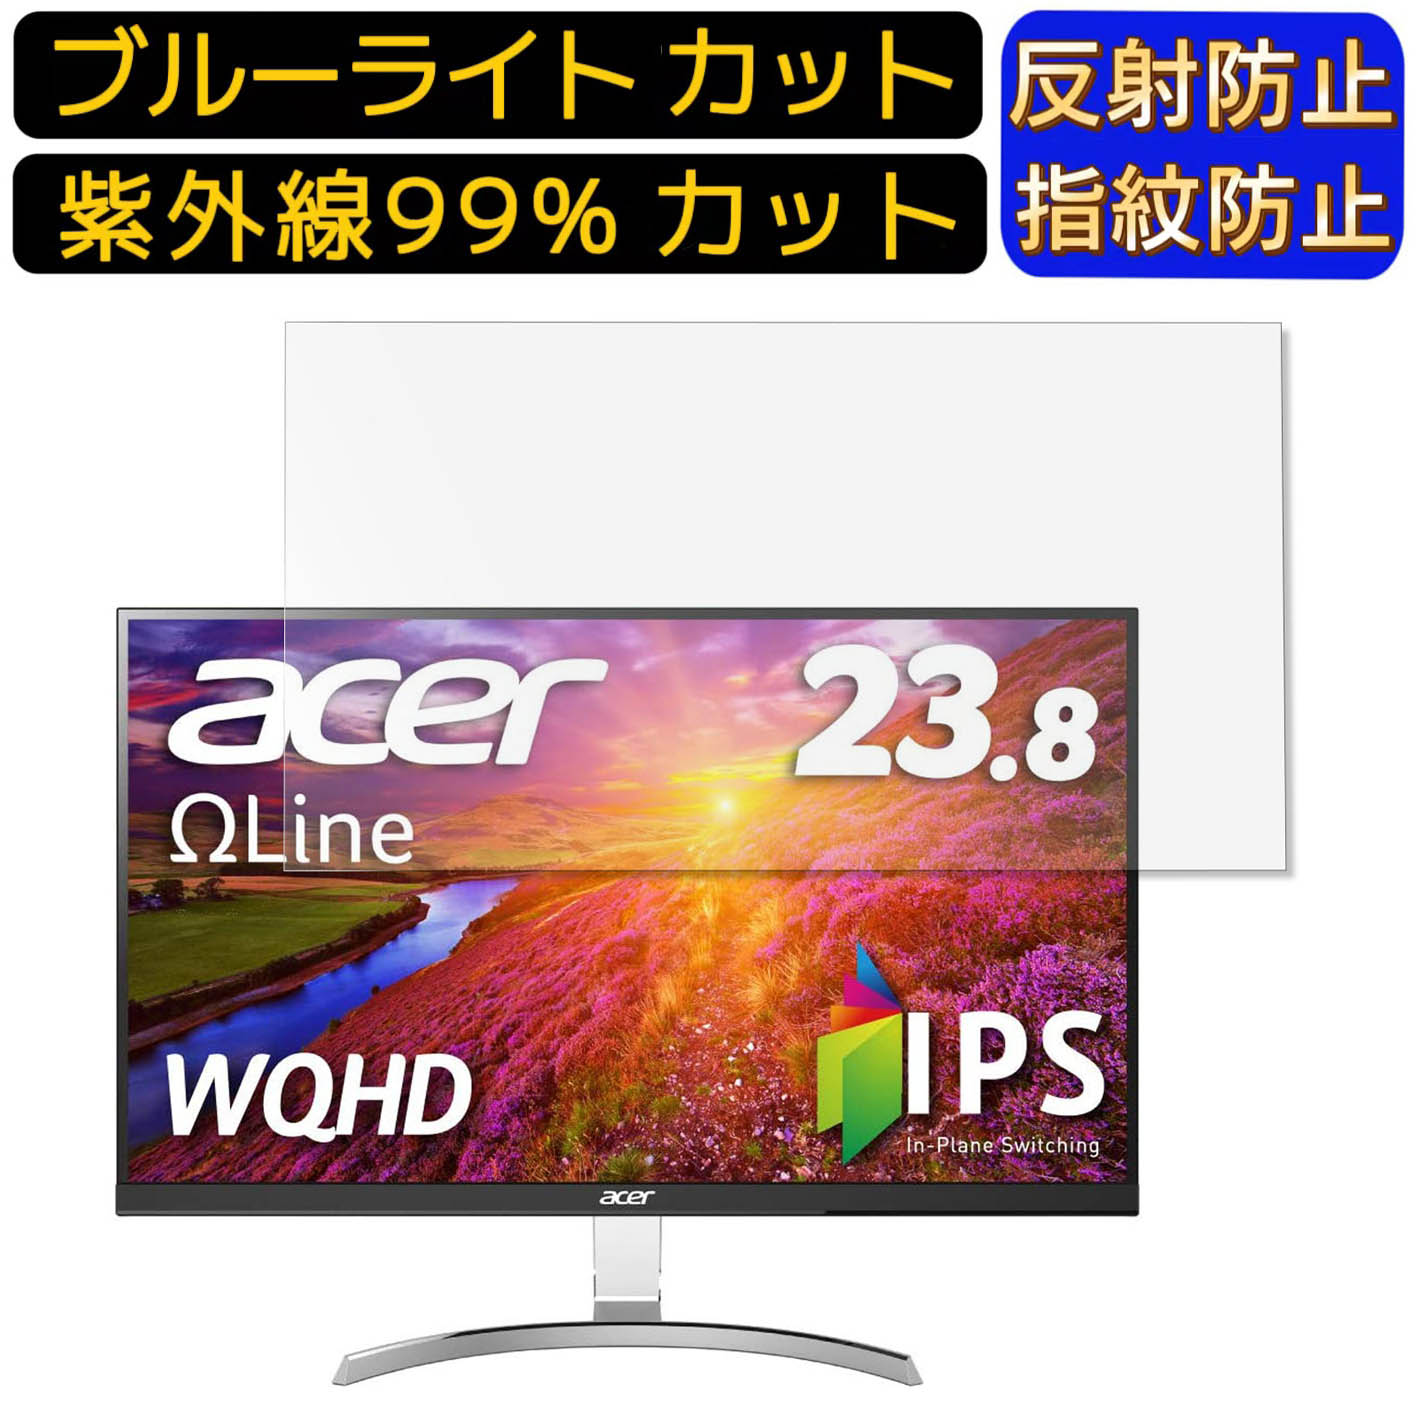 【ポイント2倍】Acer RC241YUsmidpx 23.8イ